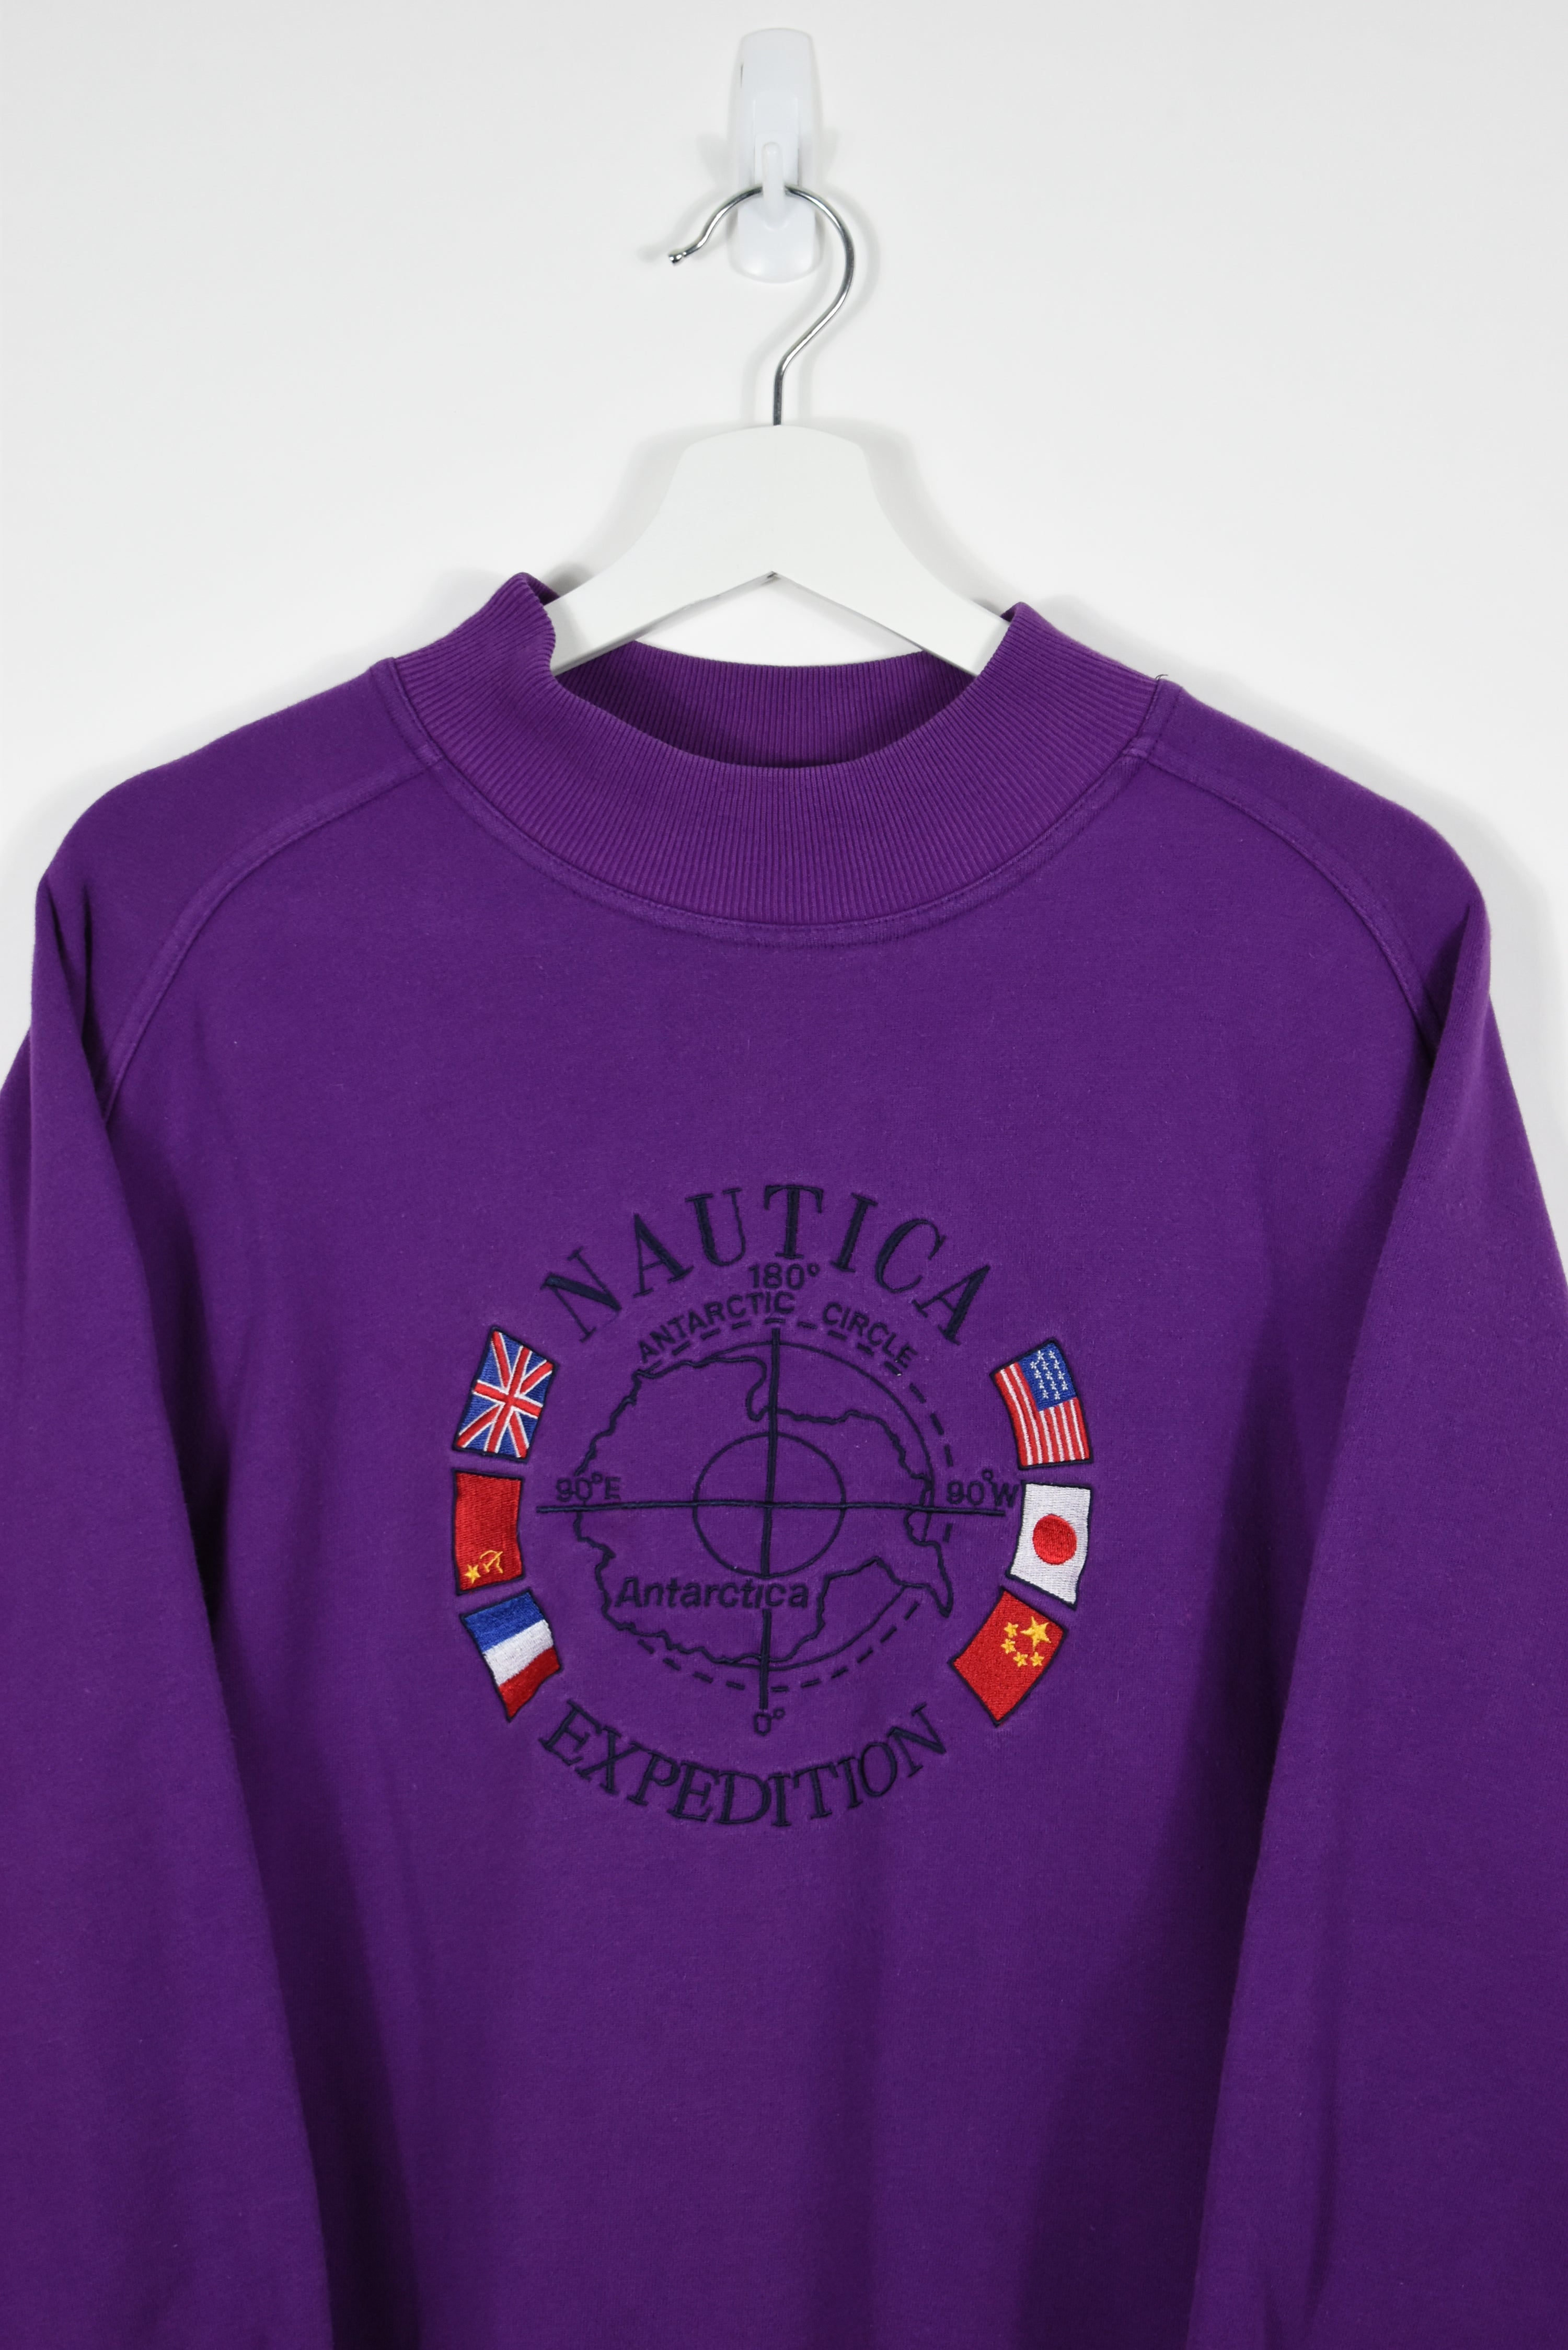 Vintage Nautica Embroidery Sweatshirt Medium / Large